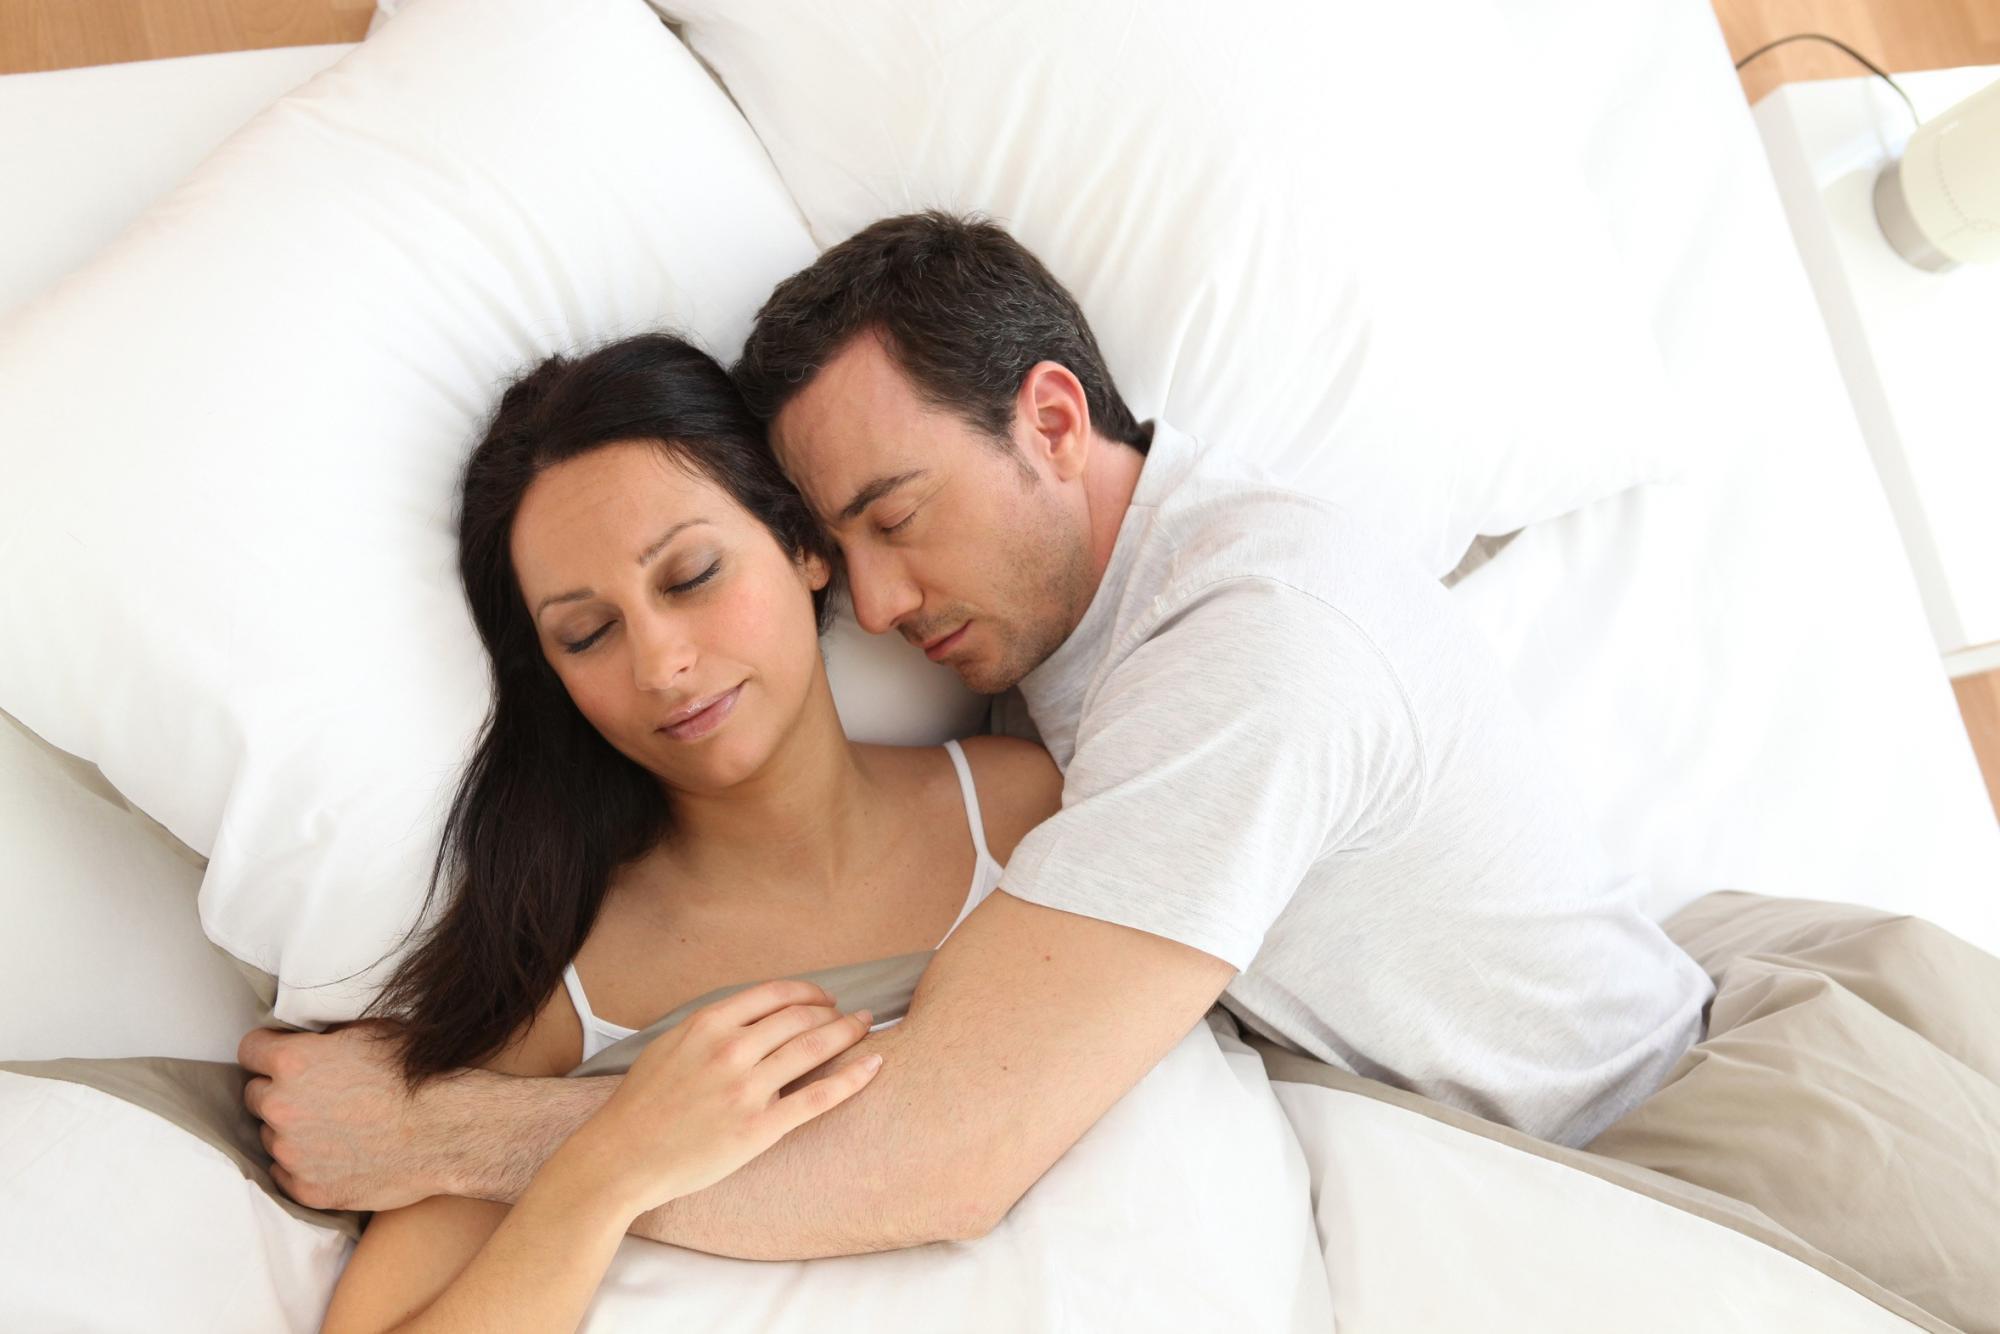 Ce Que Votre Position En Dormant Révèle De Votre Couple